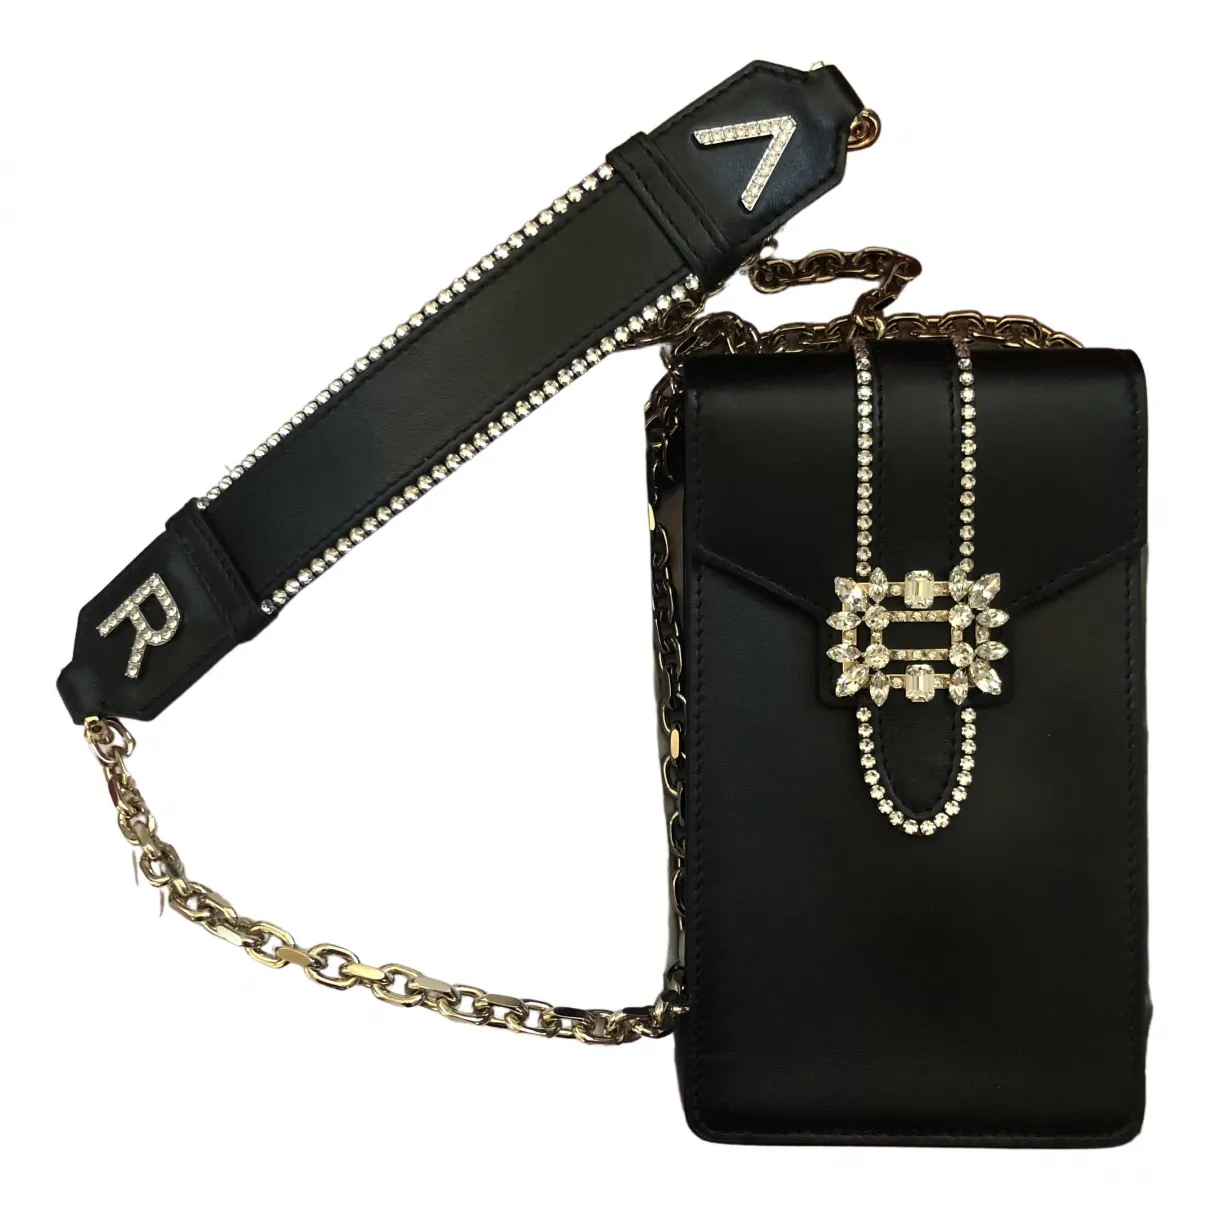 Leather purse Roger Vivier